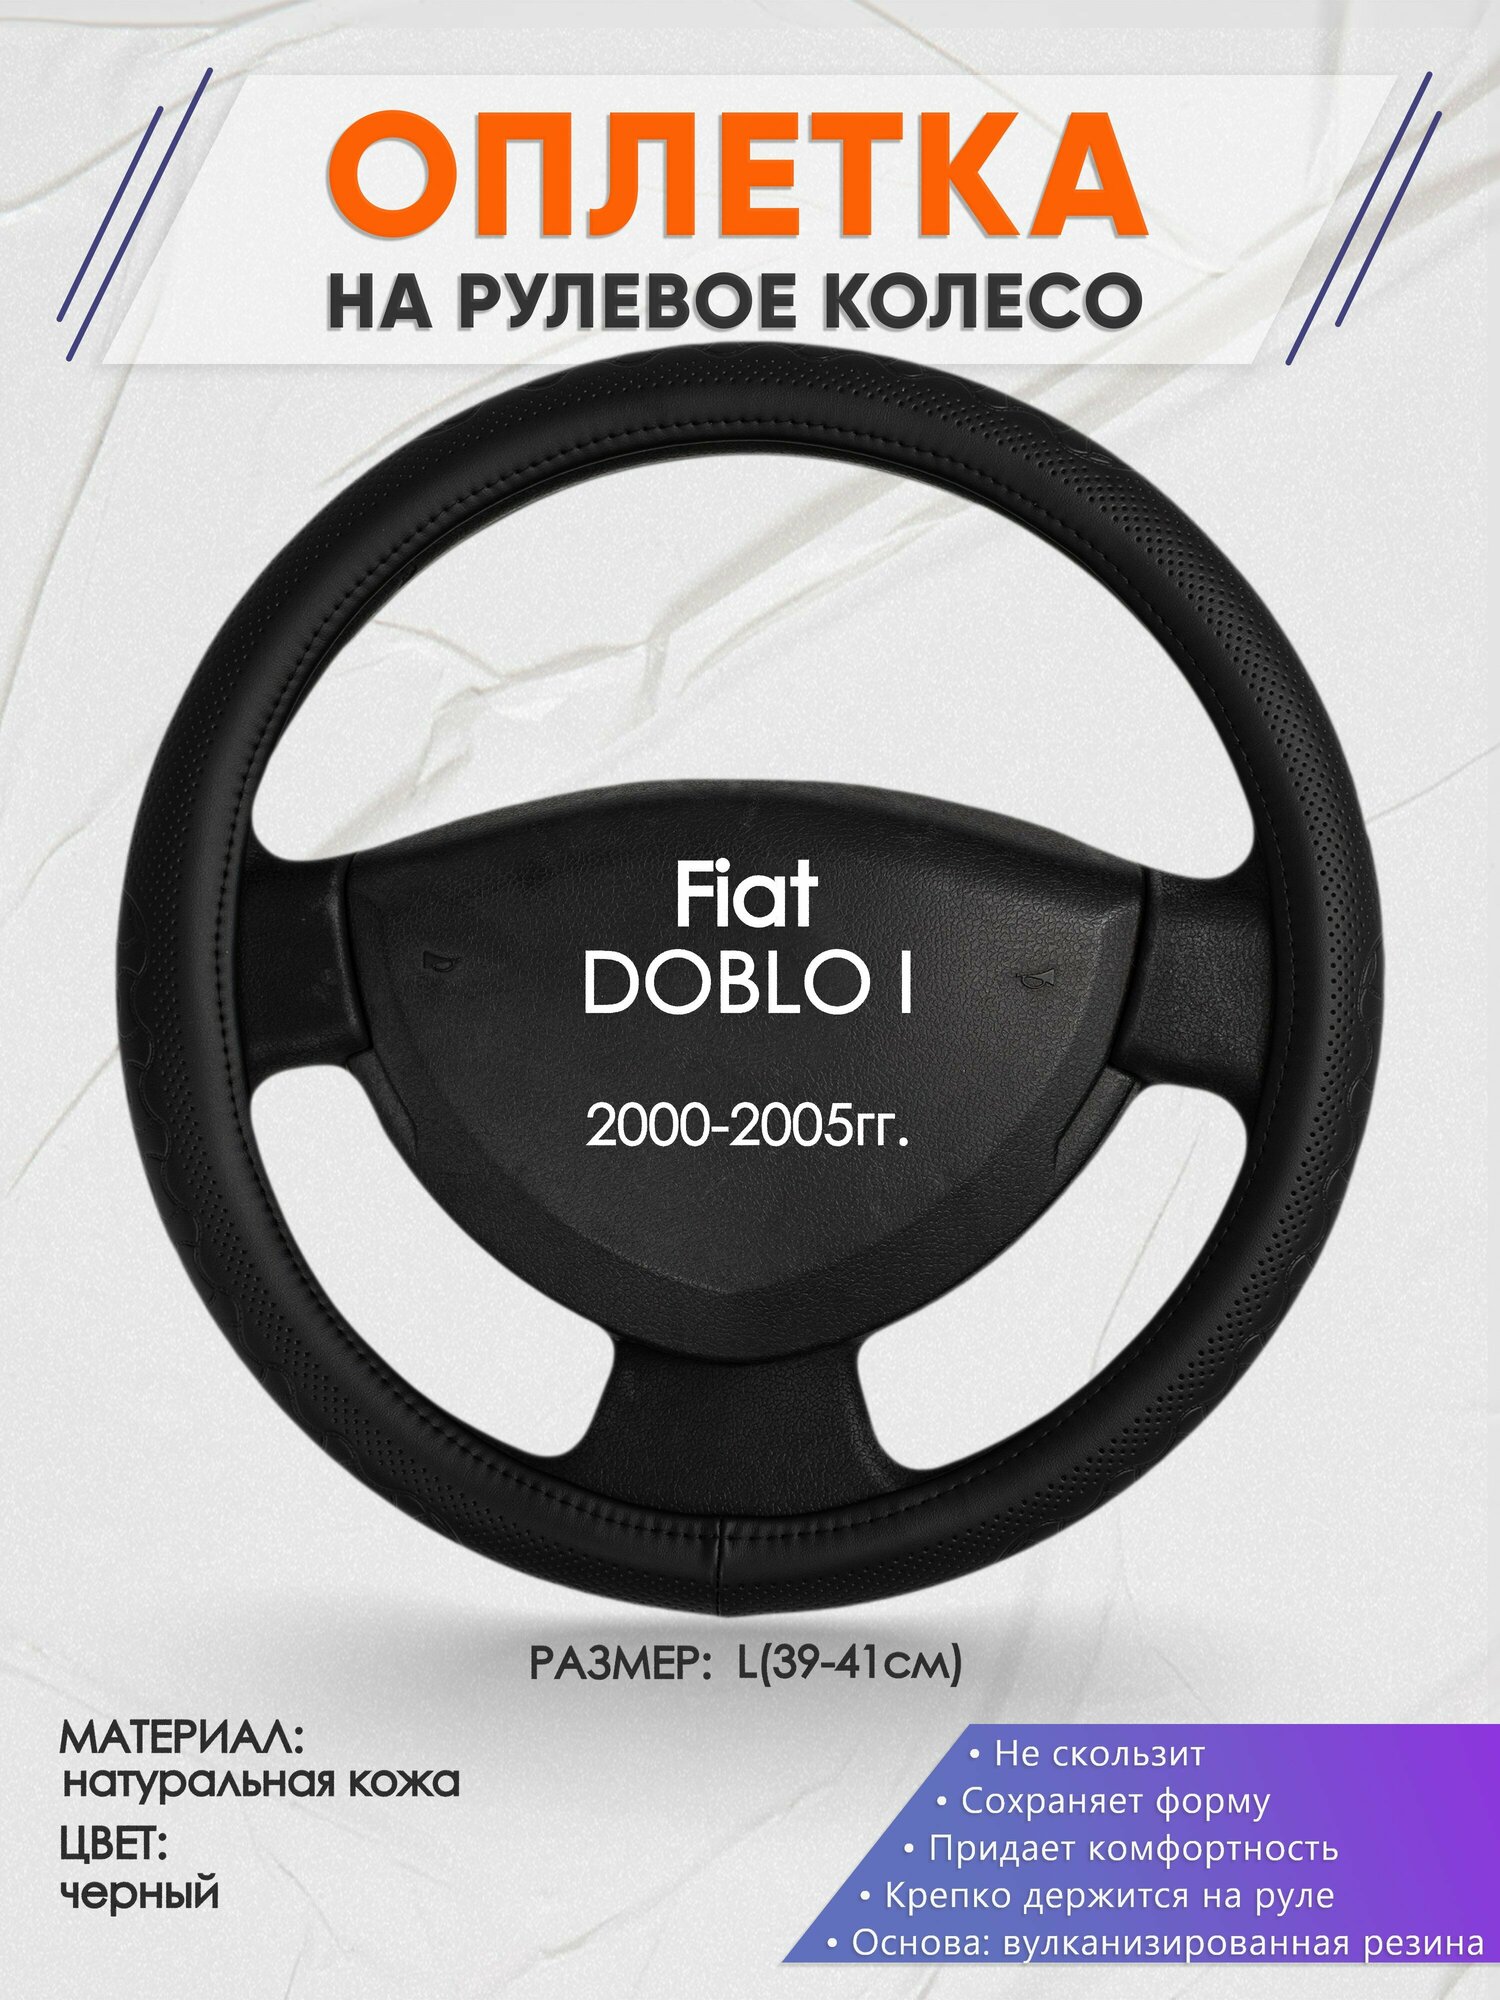 Оплетка на руль для Fiat DOBLO I(Фиат Добло) 2000-2005, L(39-41см), Натуральная кожа 25